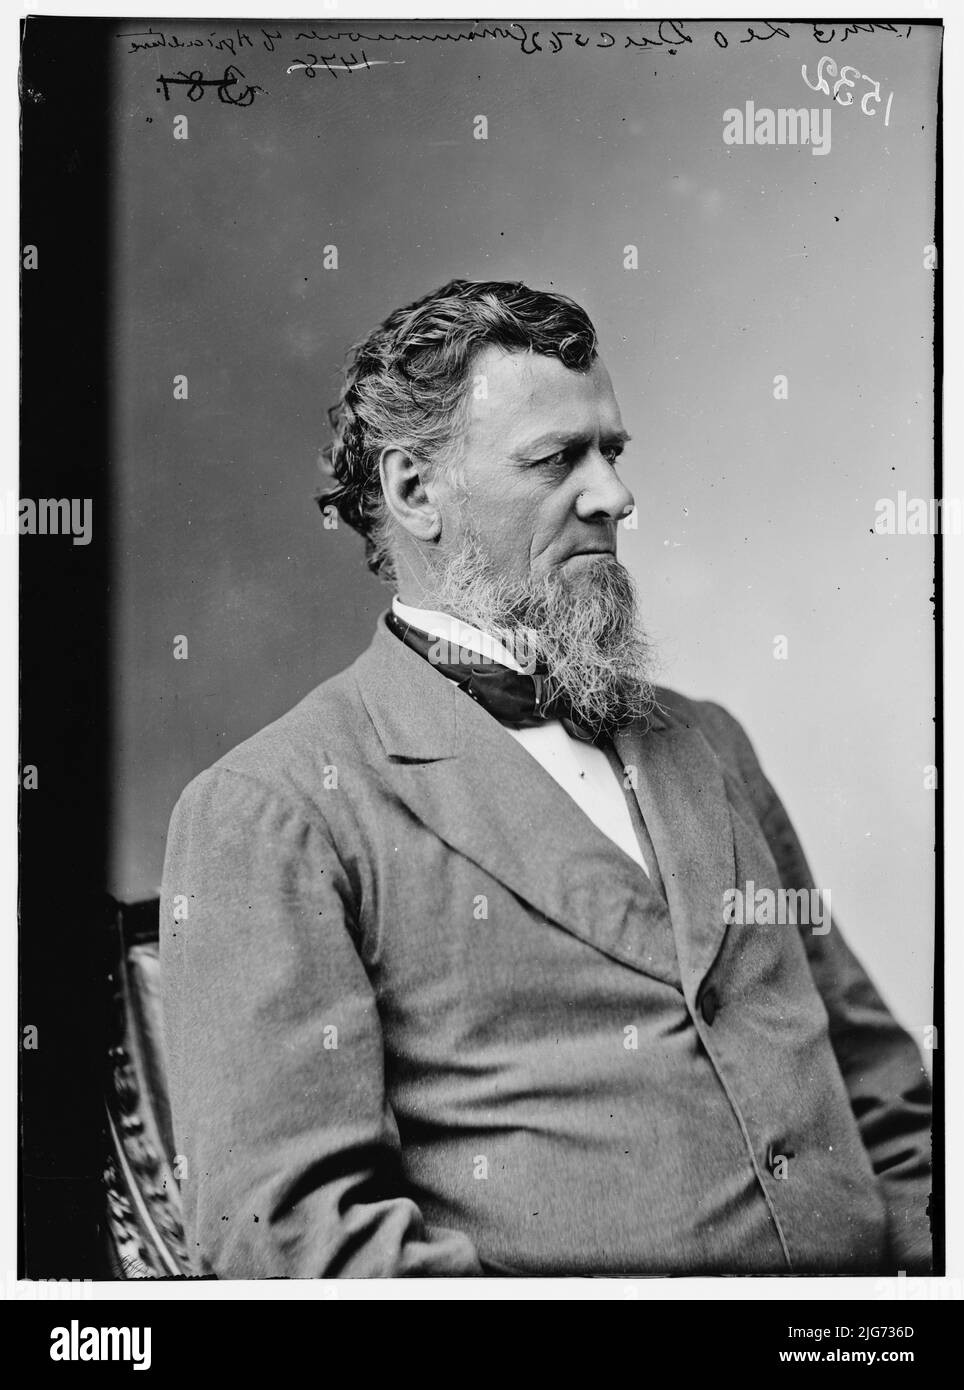 La Duc, Generale, Commissario per l'Agricoltura, tra il 1870 e il 1880. [Forse un ritratto di William Gates Leduc, politico, ufficiale dell'esercito dell'Unione durante la guerra civile americana]. Foto Stock